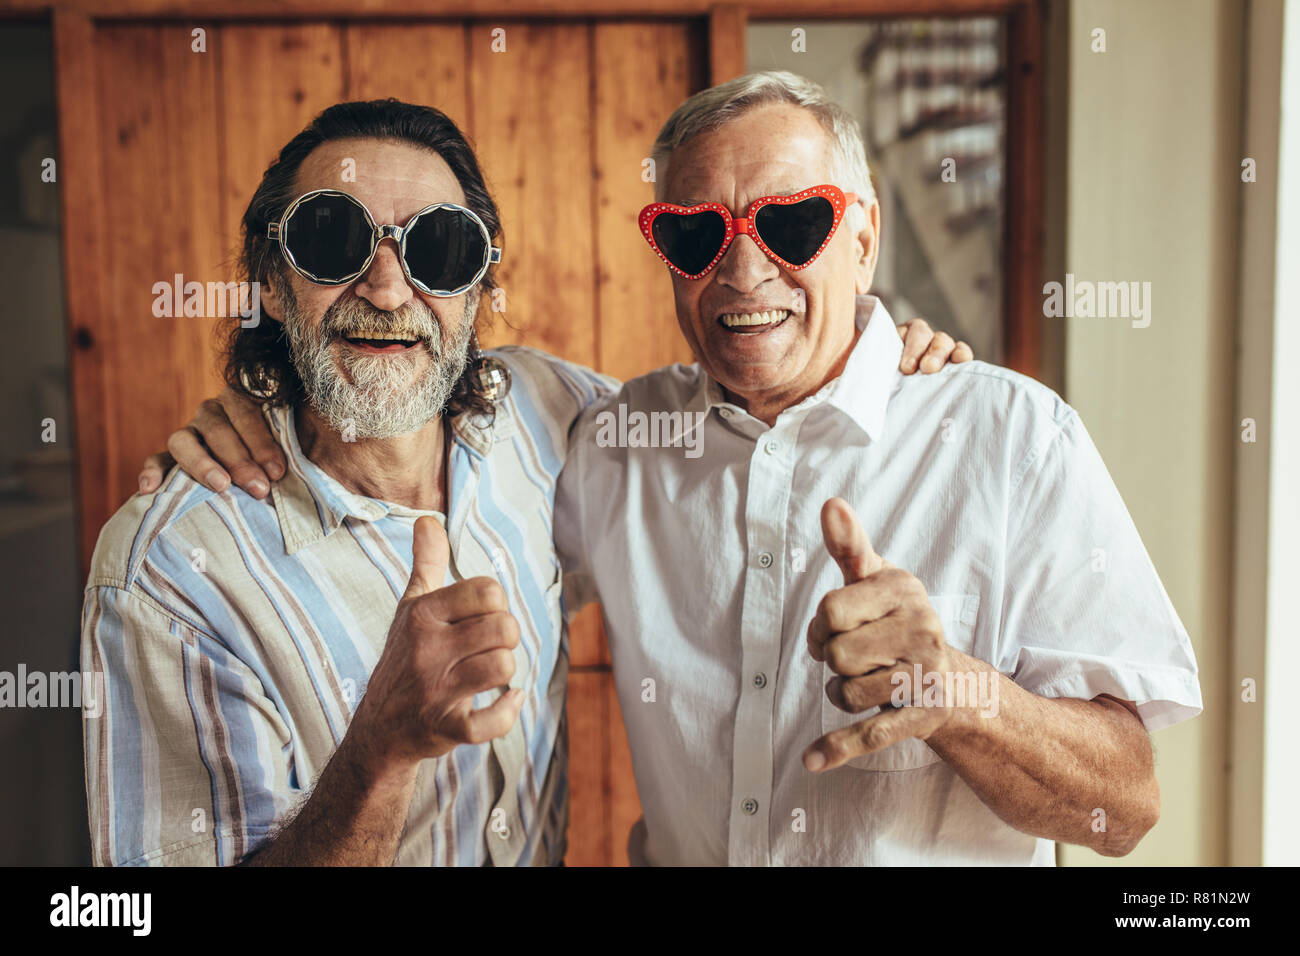 Heureux les hommes âgés portant des lunettes drôles showing Thumbs up. Amis retraités avec partie eyewear giving Thumbs up. Banque D'Images